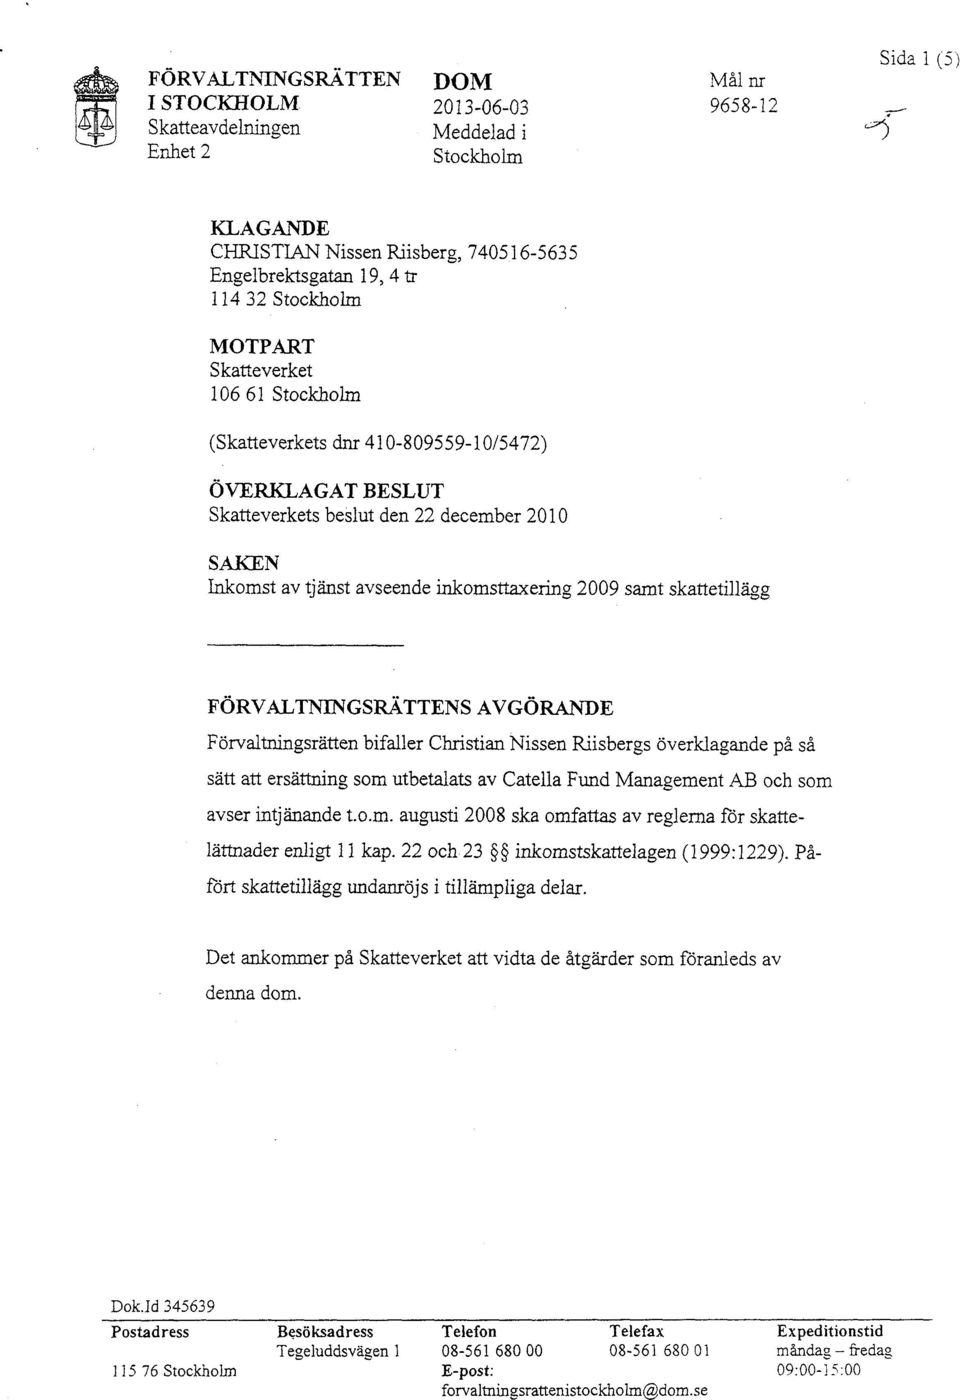 10661 Stockholm (Skatteverkets dnr 410-809559-10/5472) ÖVERKLAGAT BESLUT Skatteverkets beslut den 22 december 2010 SAKEN Inkomst av tjänst avseende inkomsttaxering 2009 samt skattetillägg